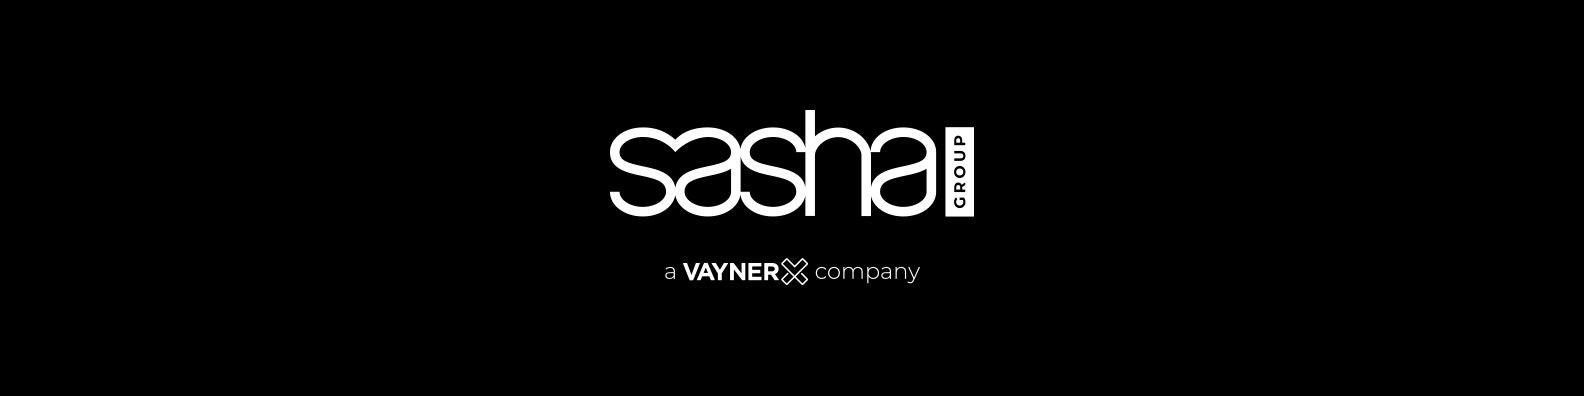 Sasha Logo - The Sasha Group | LinkedIn